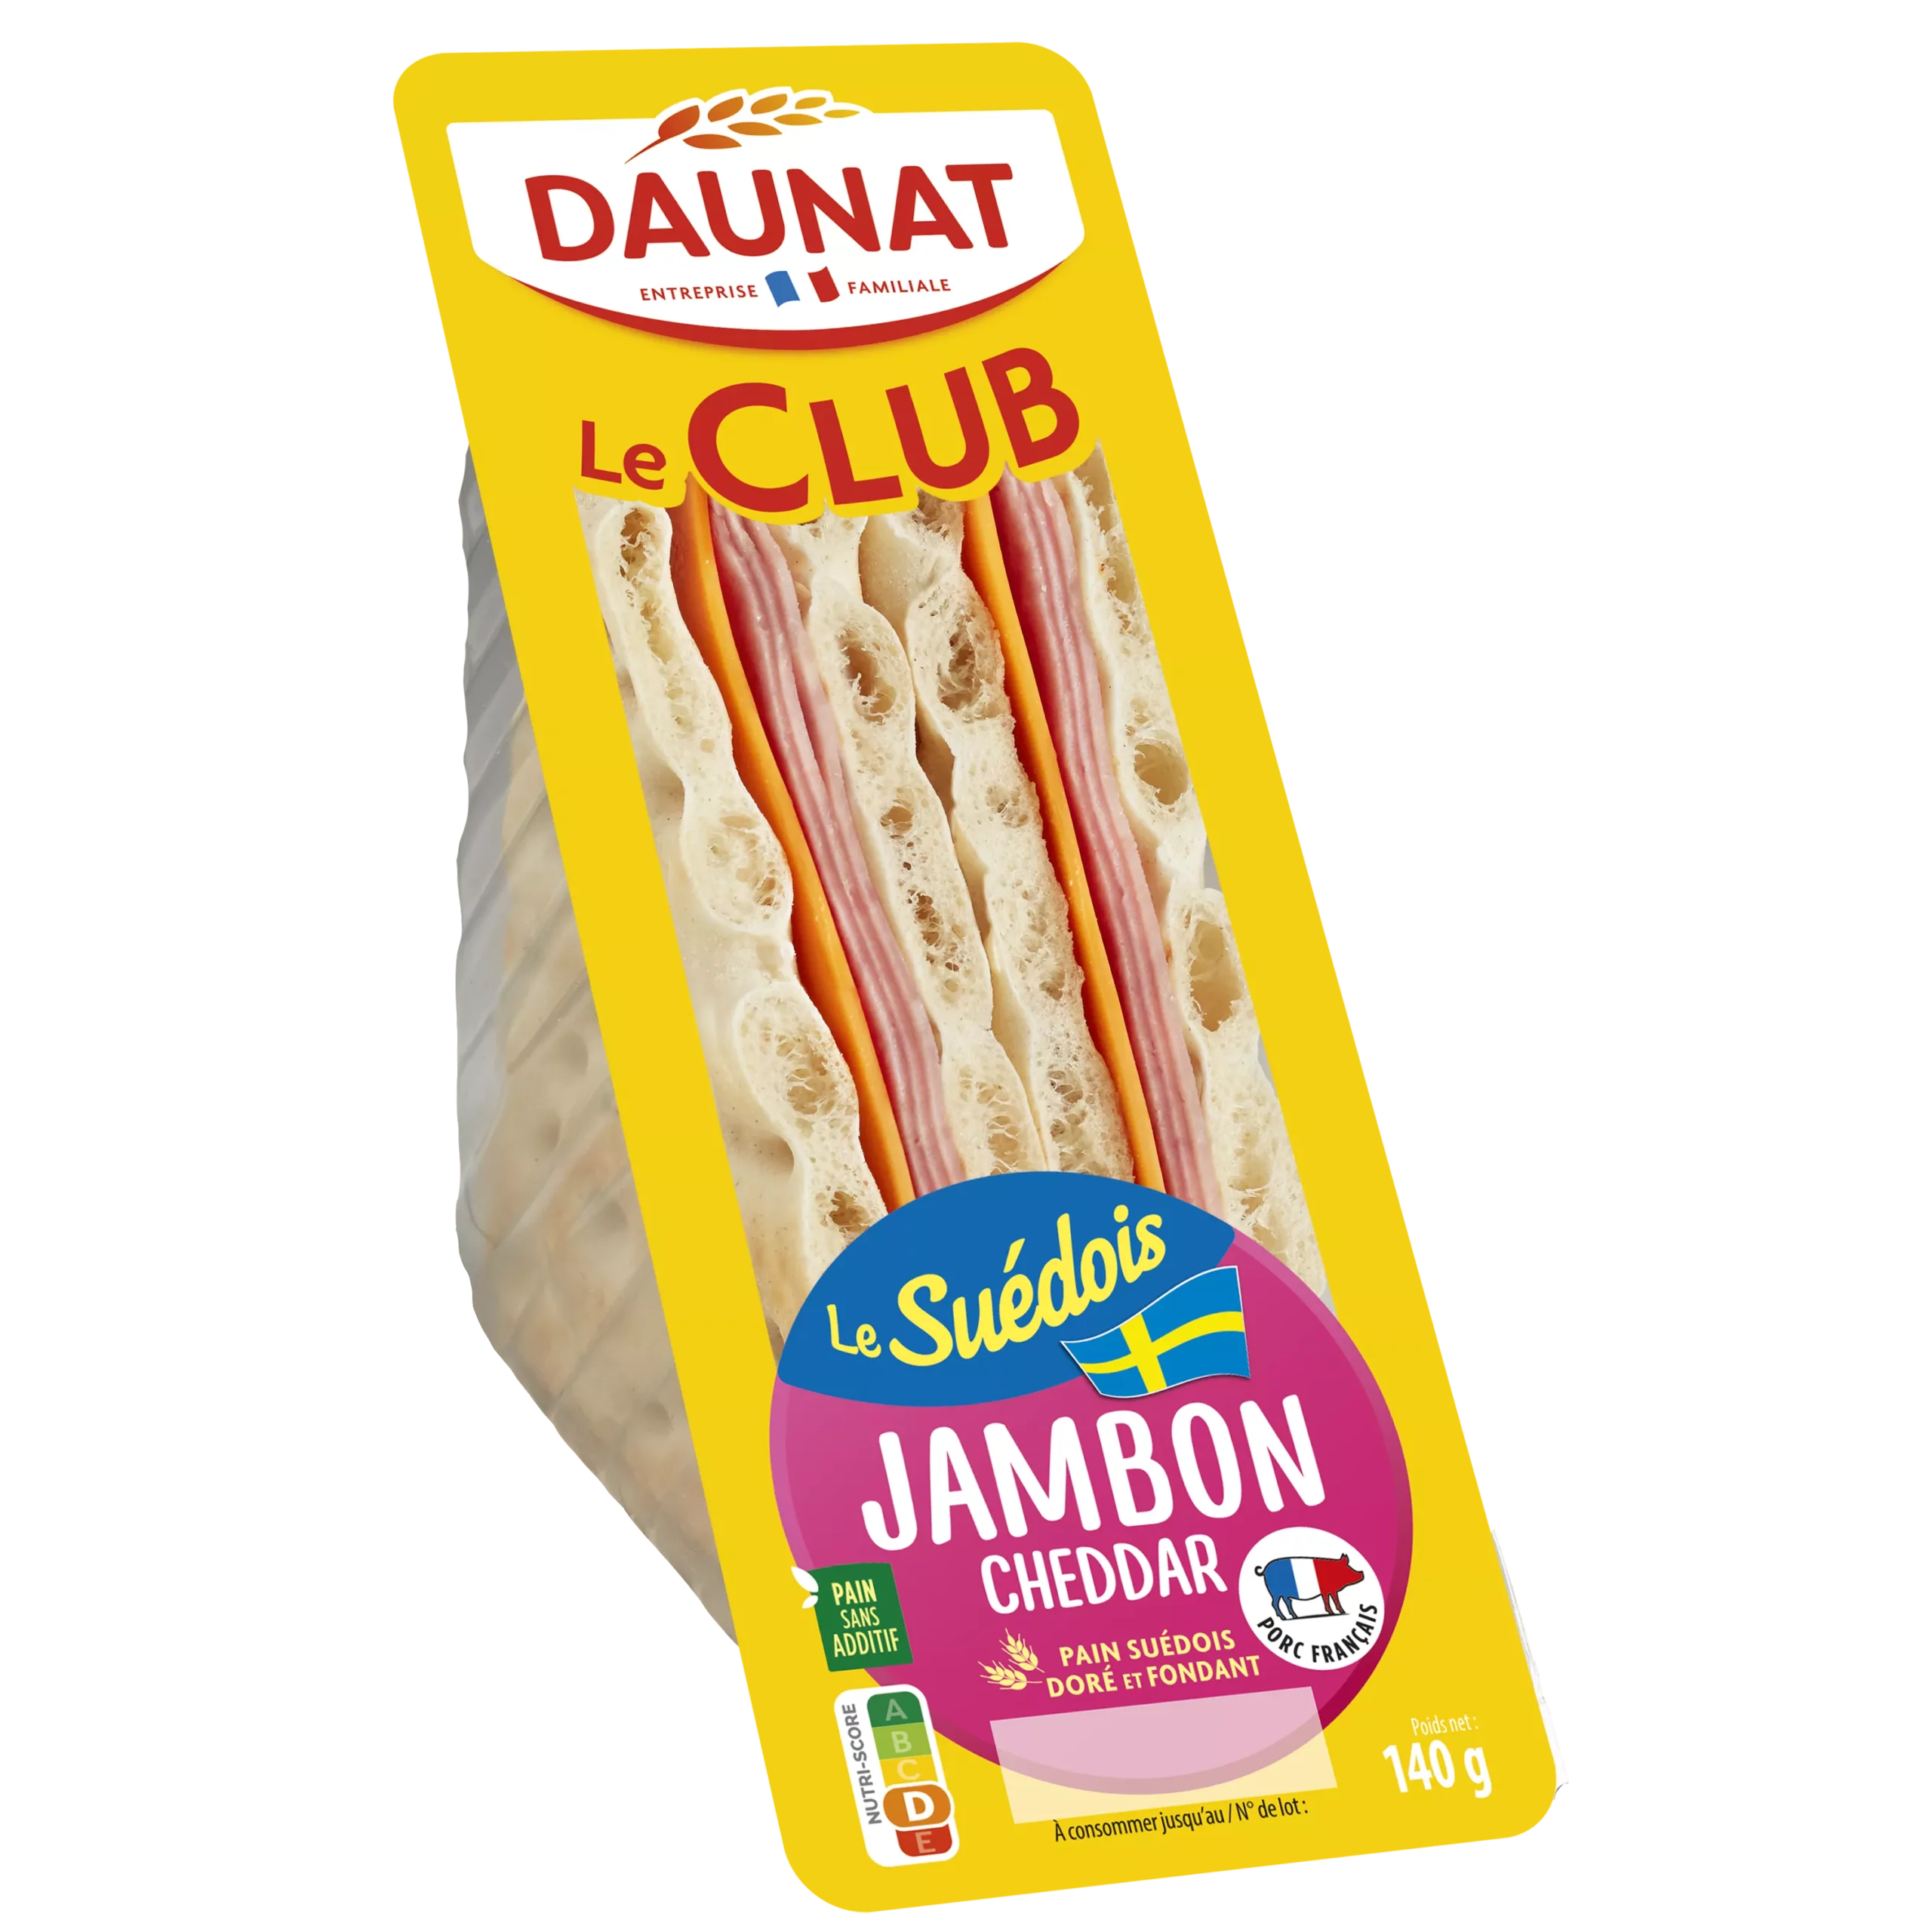 Sandwich Le Club Pain suedois Jambon Cheddar 140g